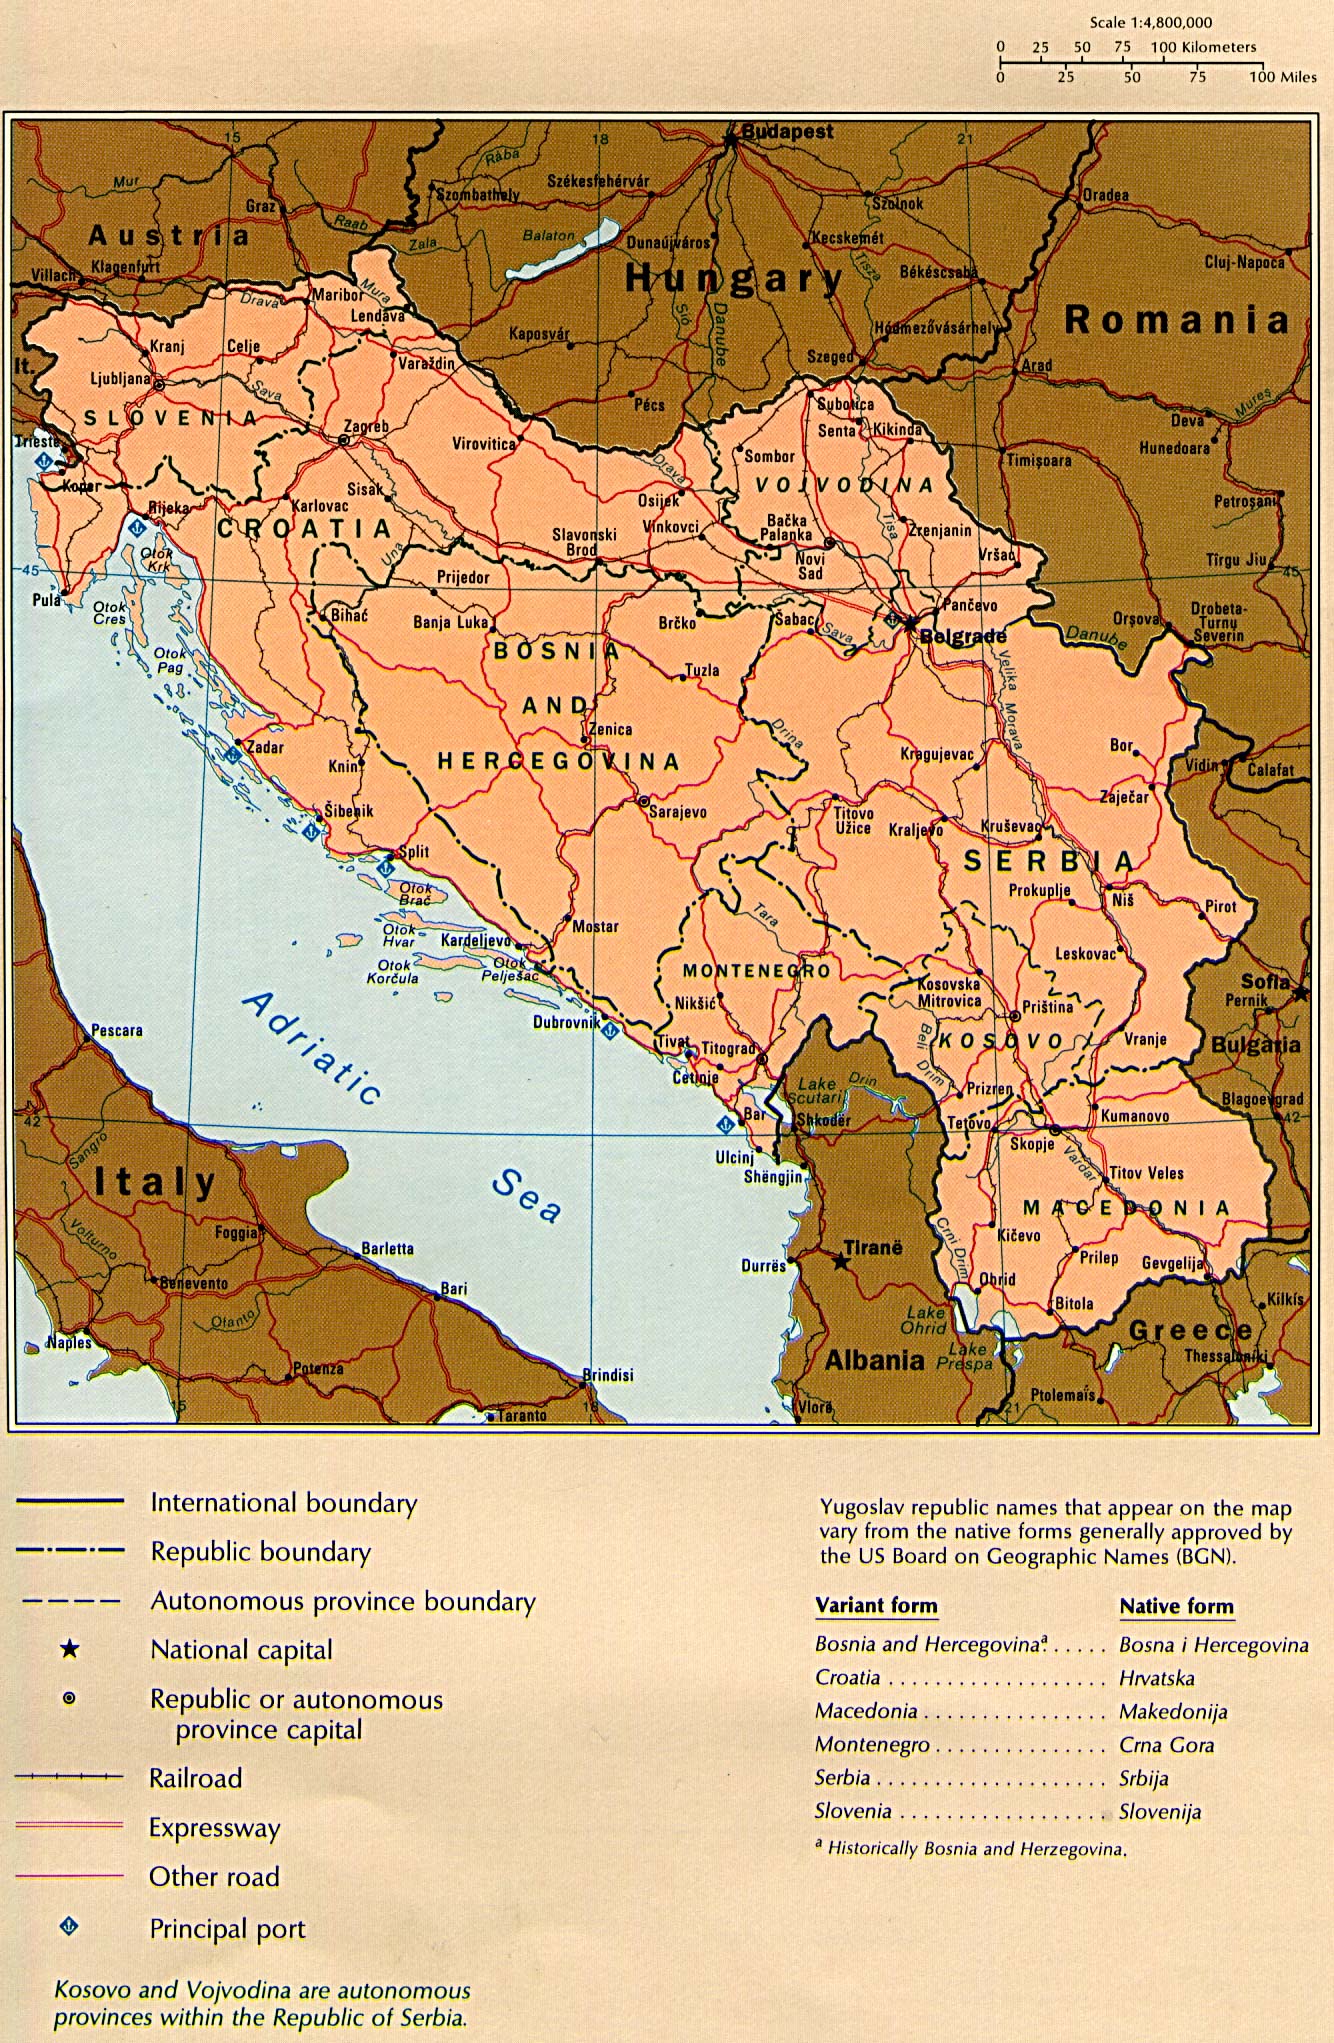 Mapa Político de la Ex Yugoslavia 1990 - Tamaño completo